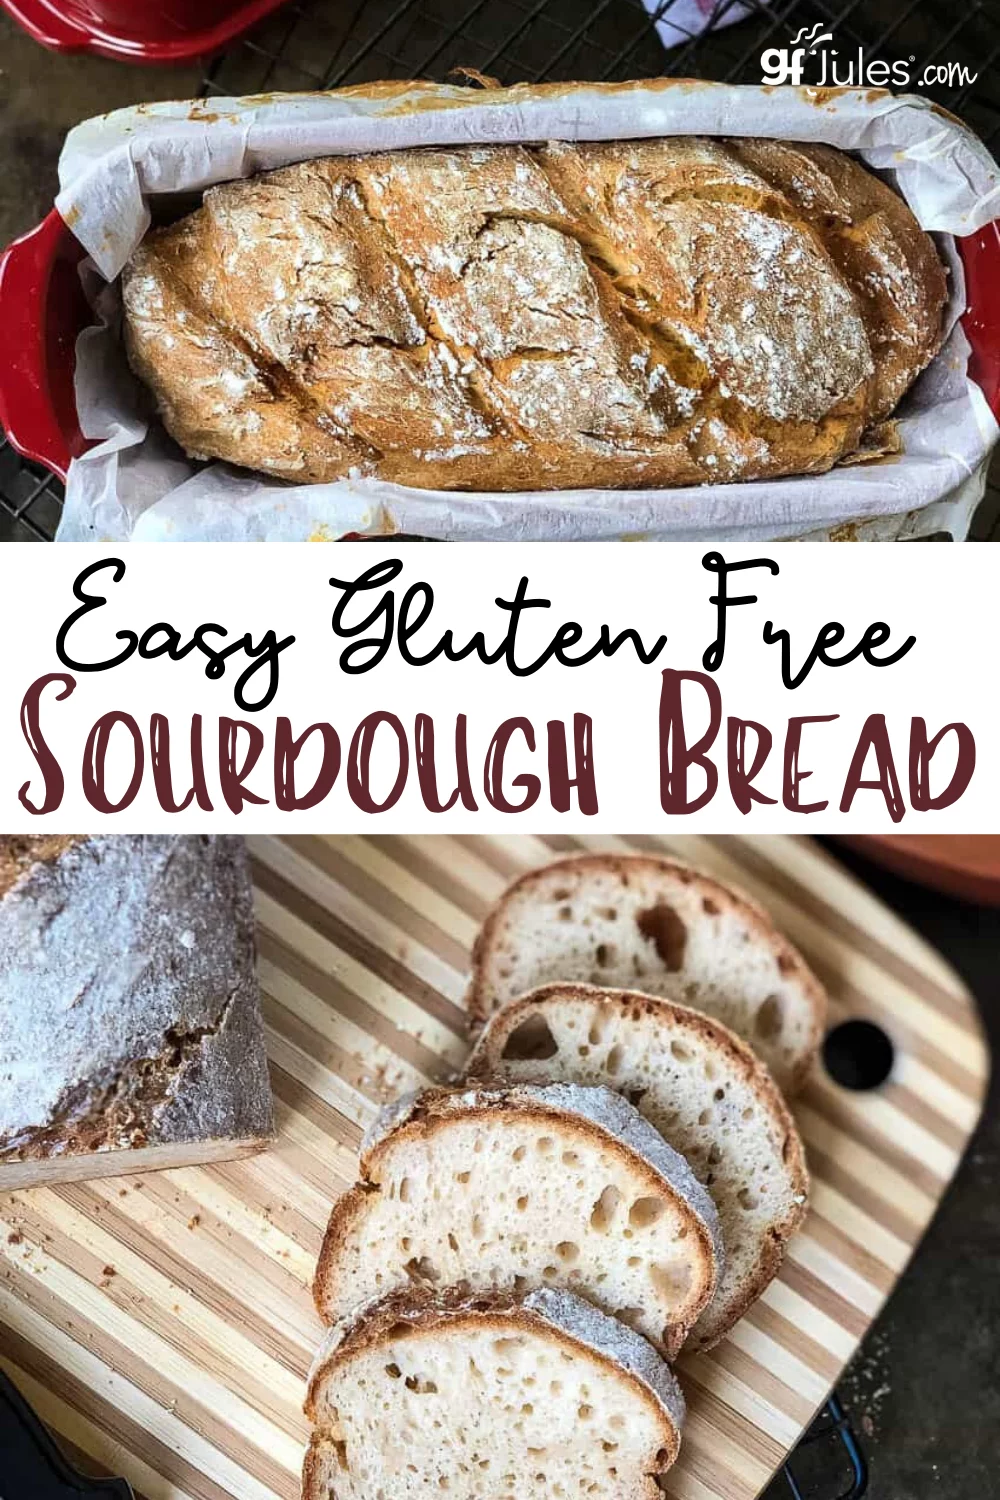 Gluten Free Sourdough Bread Recipe - authentic bread, no gluten |gfJules